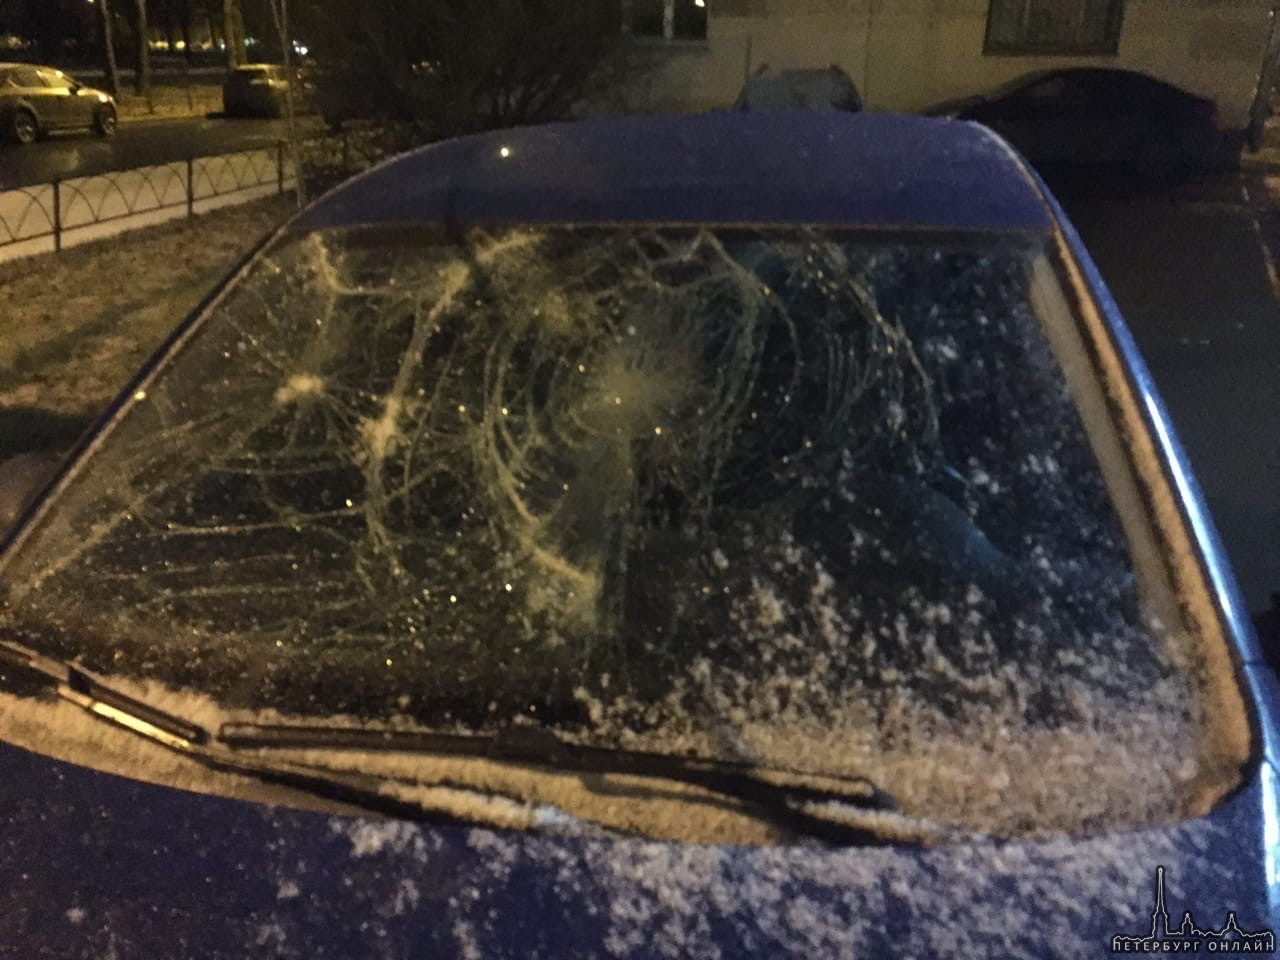 Сегодня ночью 29.11-30.11 у дома 27 на улице Орджоникидзе неизвестные разбили припаркованный автомоб...